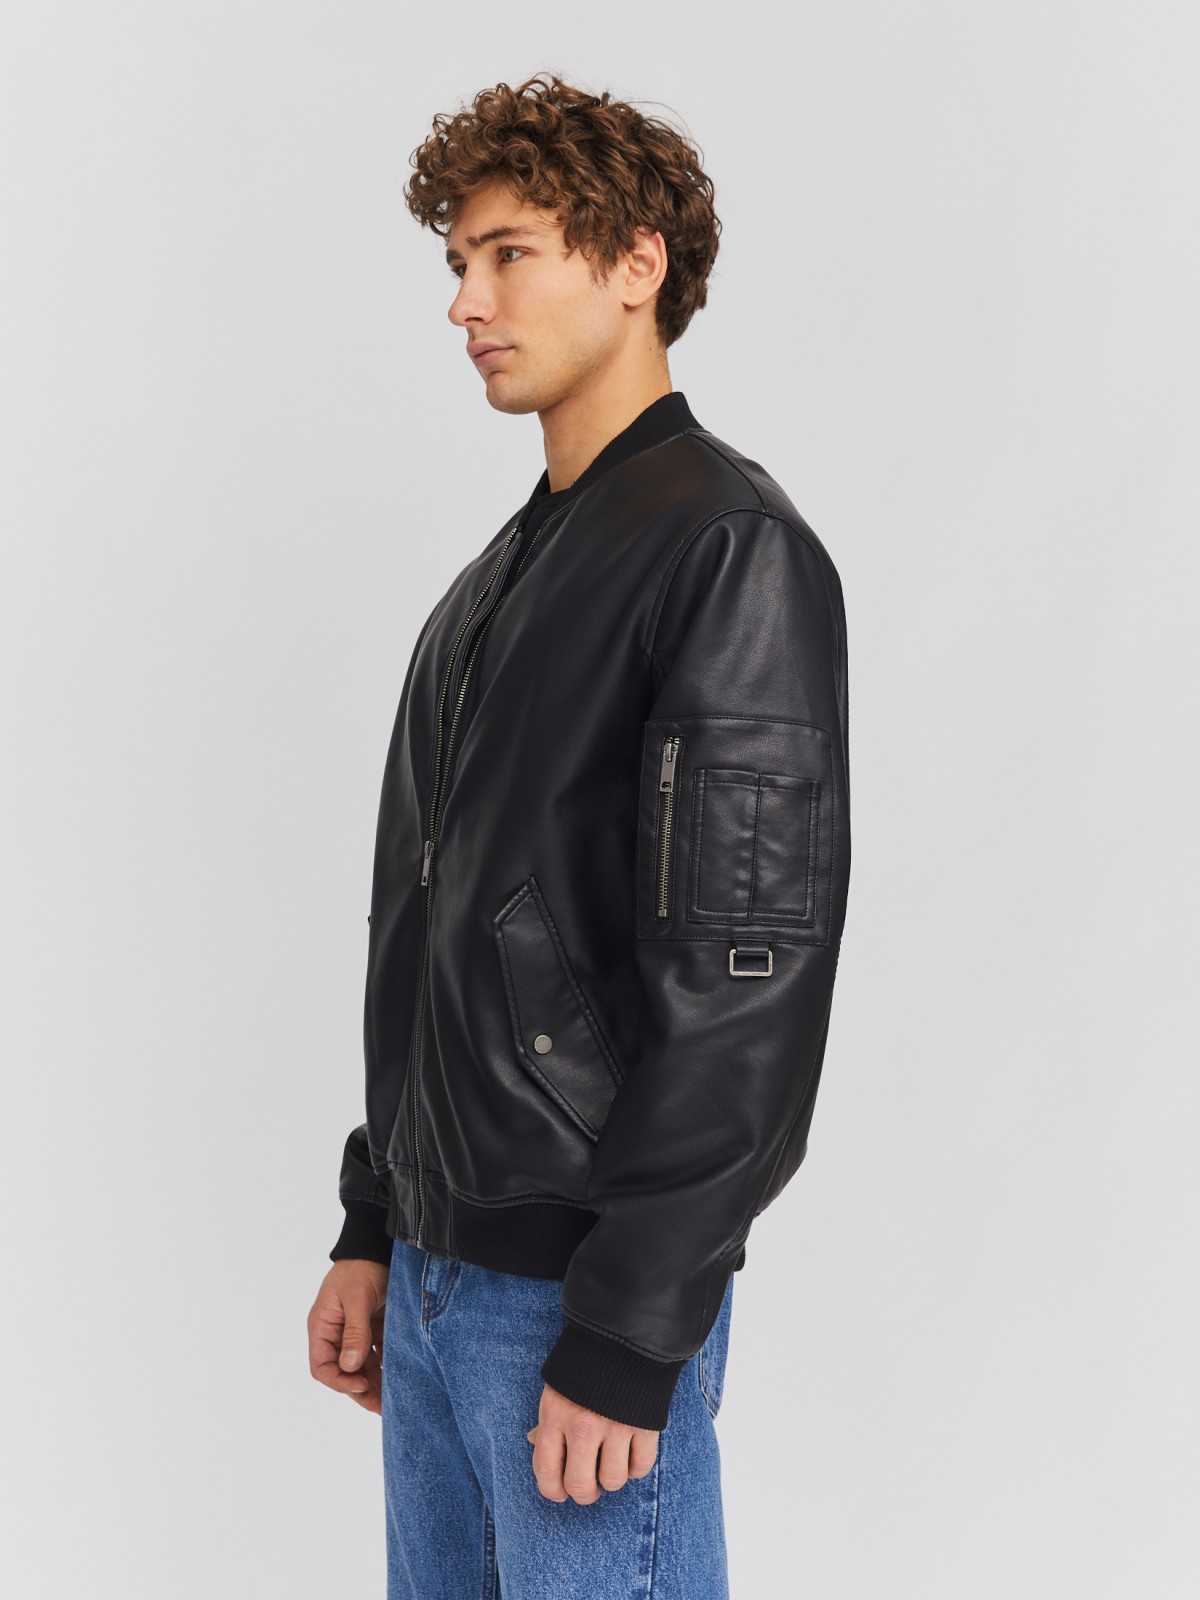 Утеплённая куртка-бомбер из экокожи на синтепоне zolla 014135150134, цвет черный, размер M - фото 3